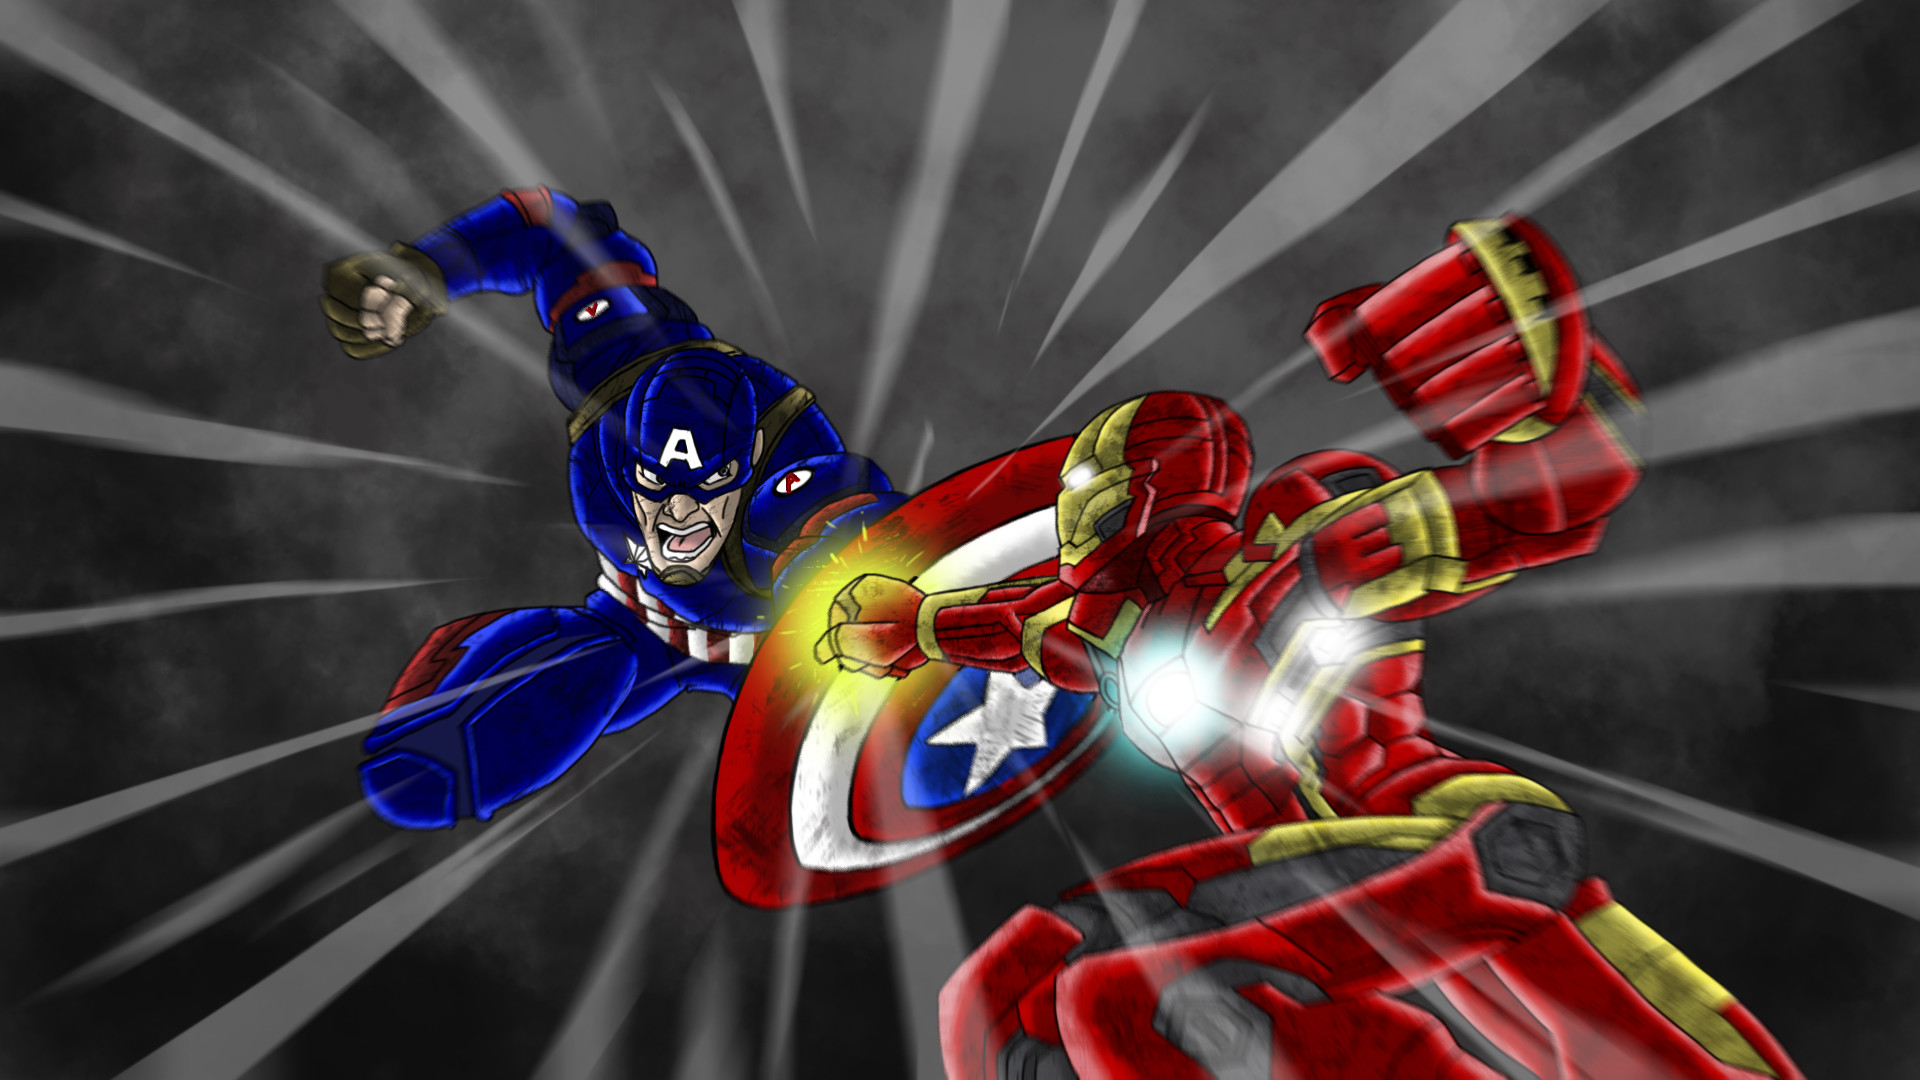 Daily Cartoon Drawings - Drawing Iron Man vs Captain America Part 2